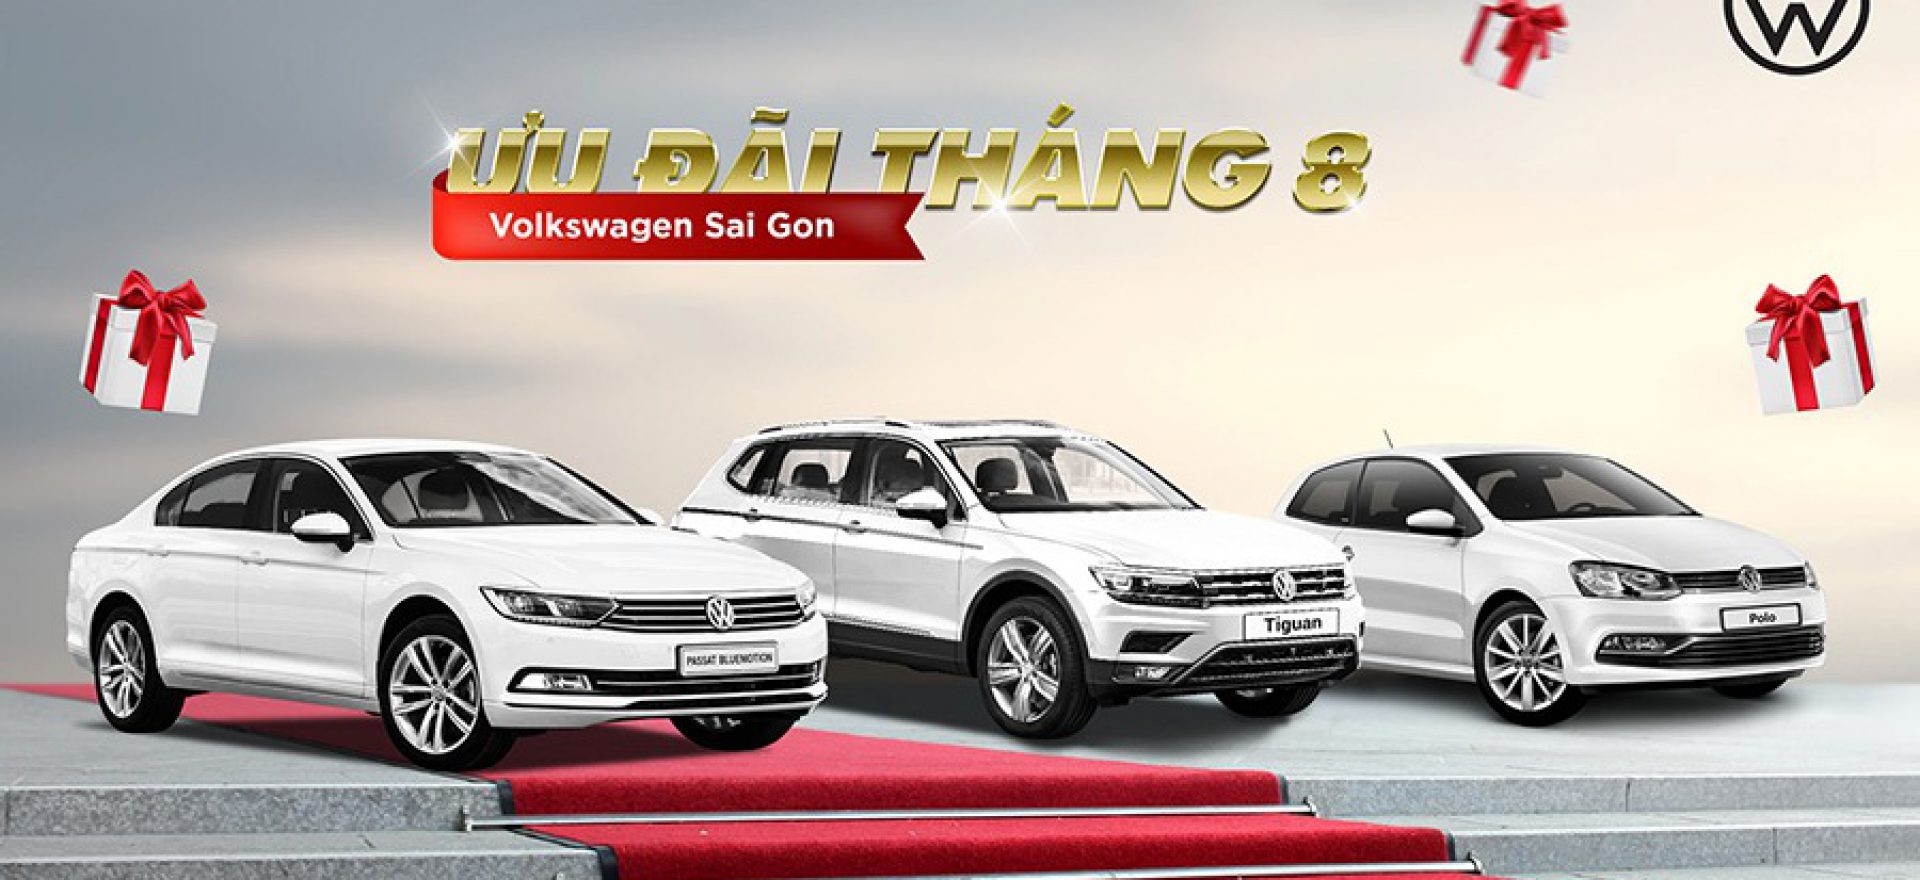 Volkswagen-truong-chinh-khuyen-mai-lon-khi-mua-xe-volkswagen-trong-thang-8